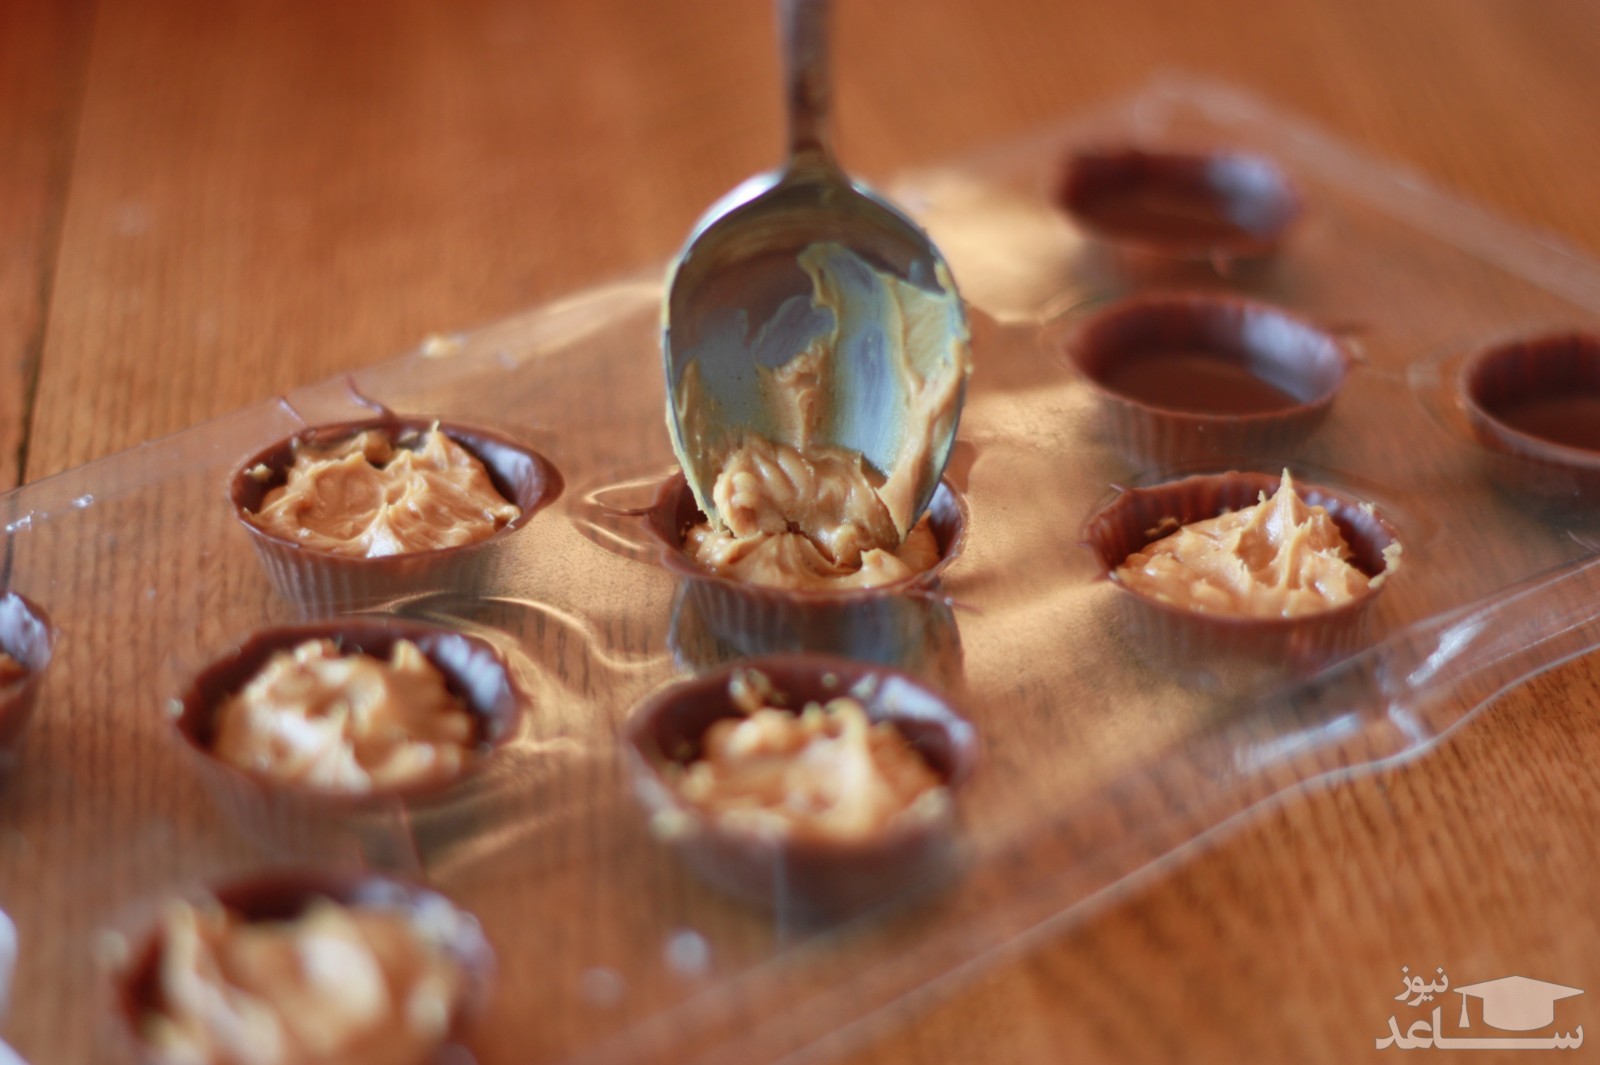 آموزش تهیه شکلات کره بادام زمینی مفید و لذیذ در منزل